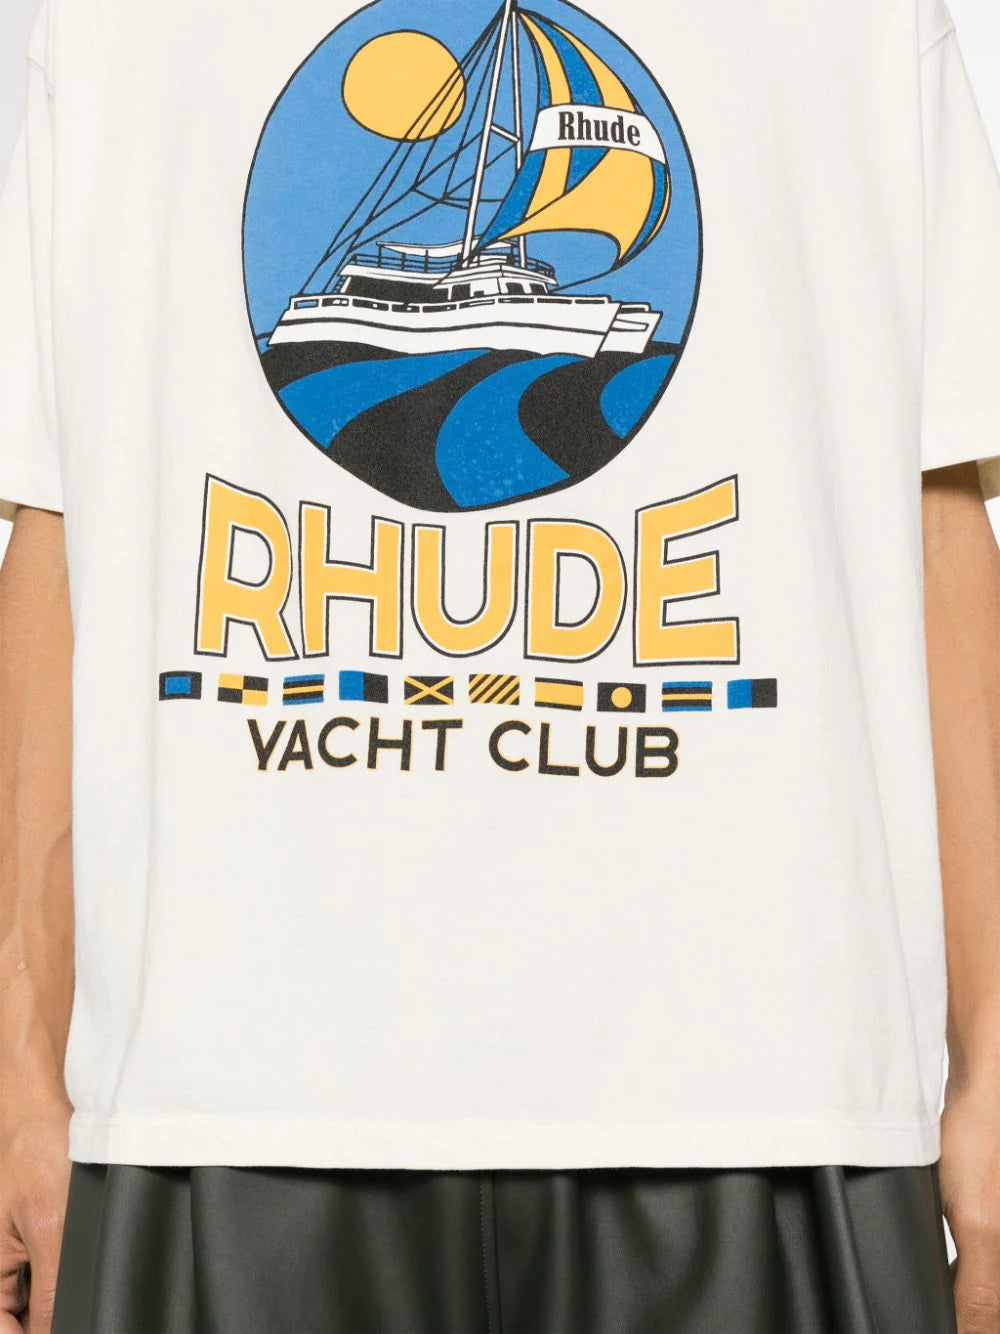 Yacht Club cotton T-shirt